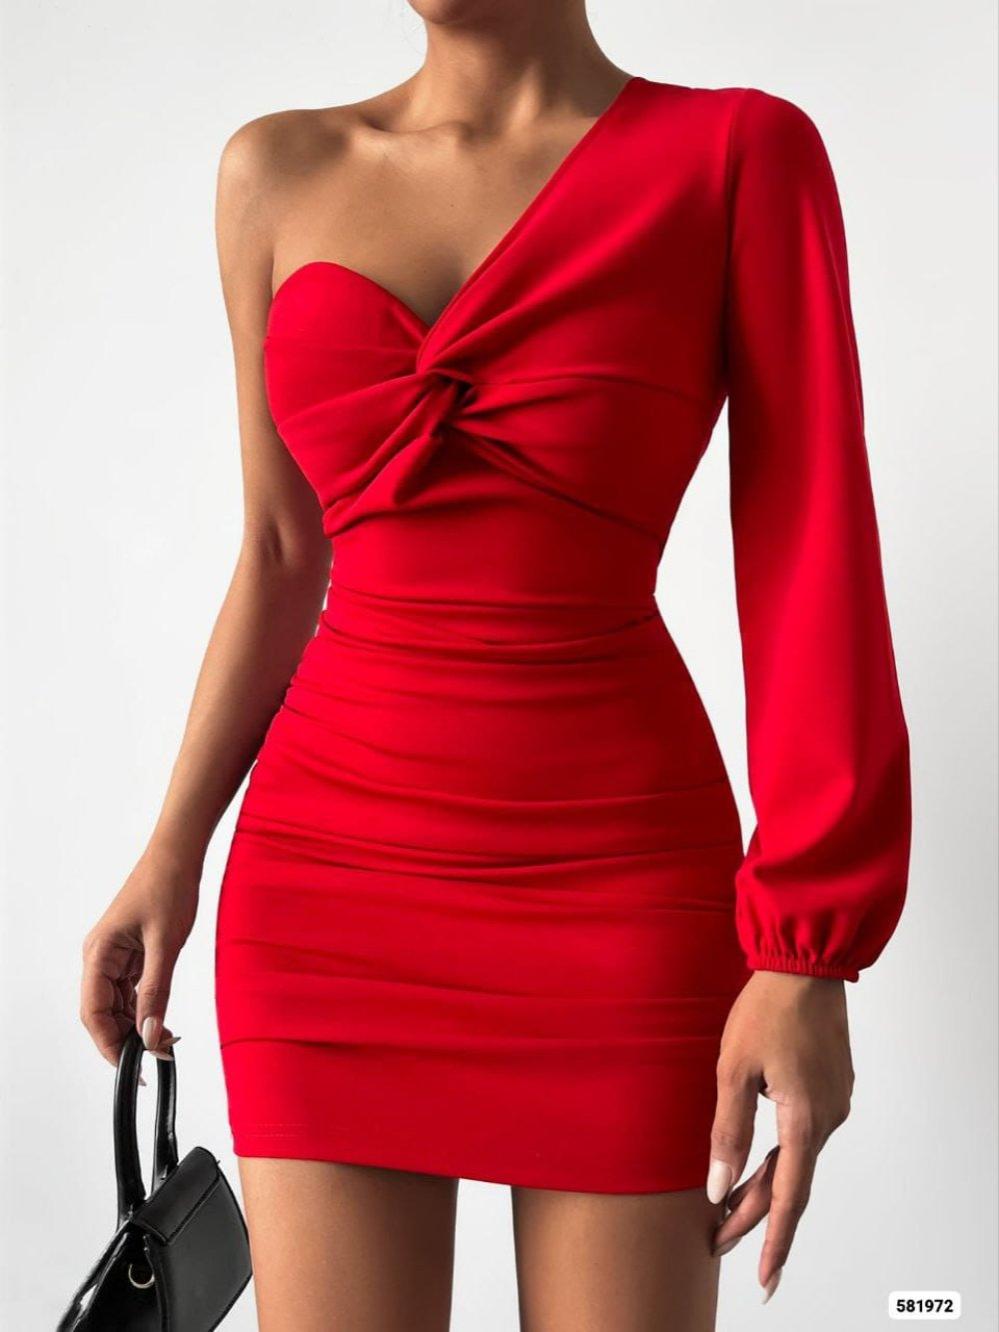 Afra Tek Kol Tasarım Elbise 581972 Kırmızı